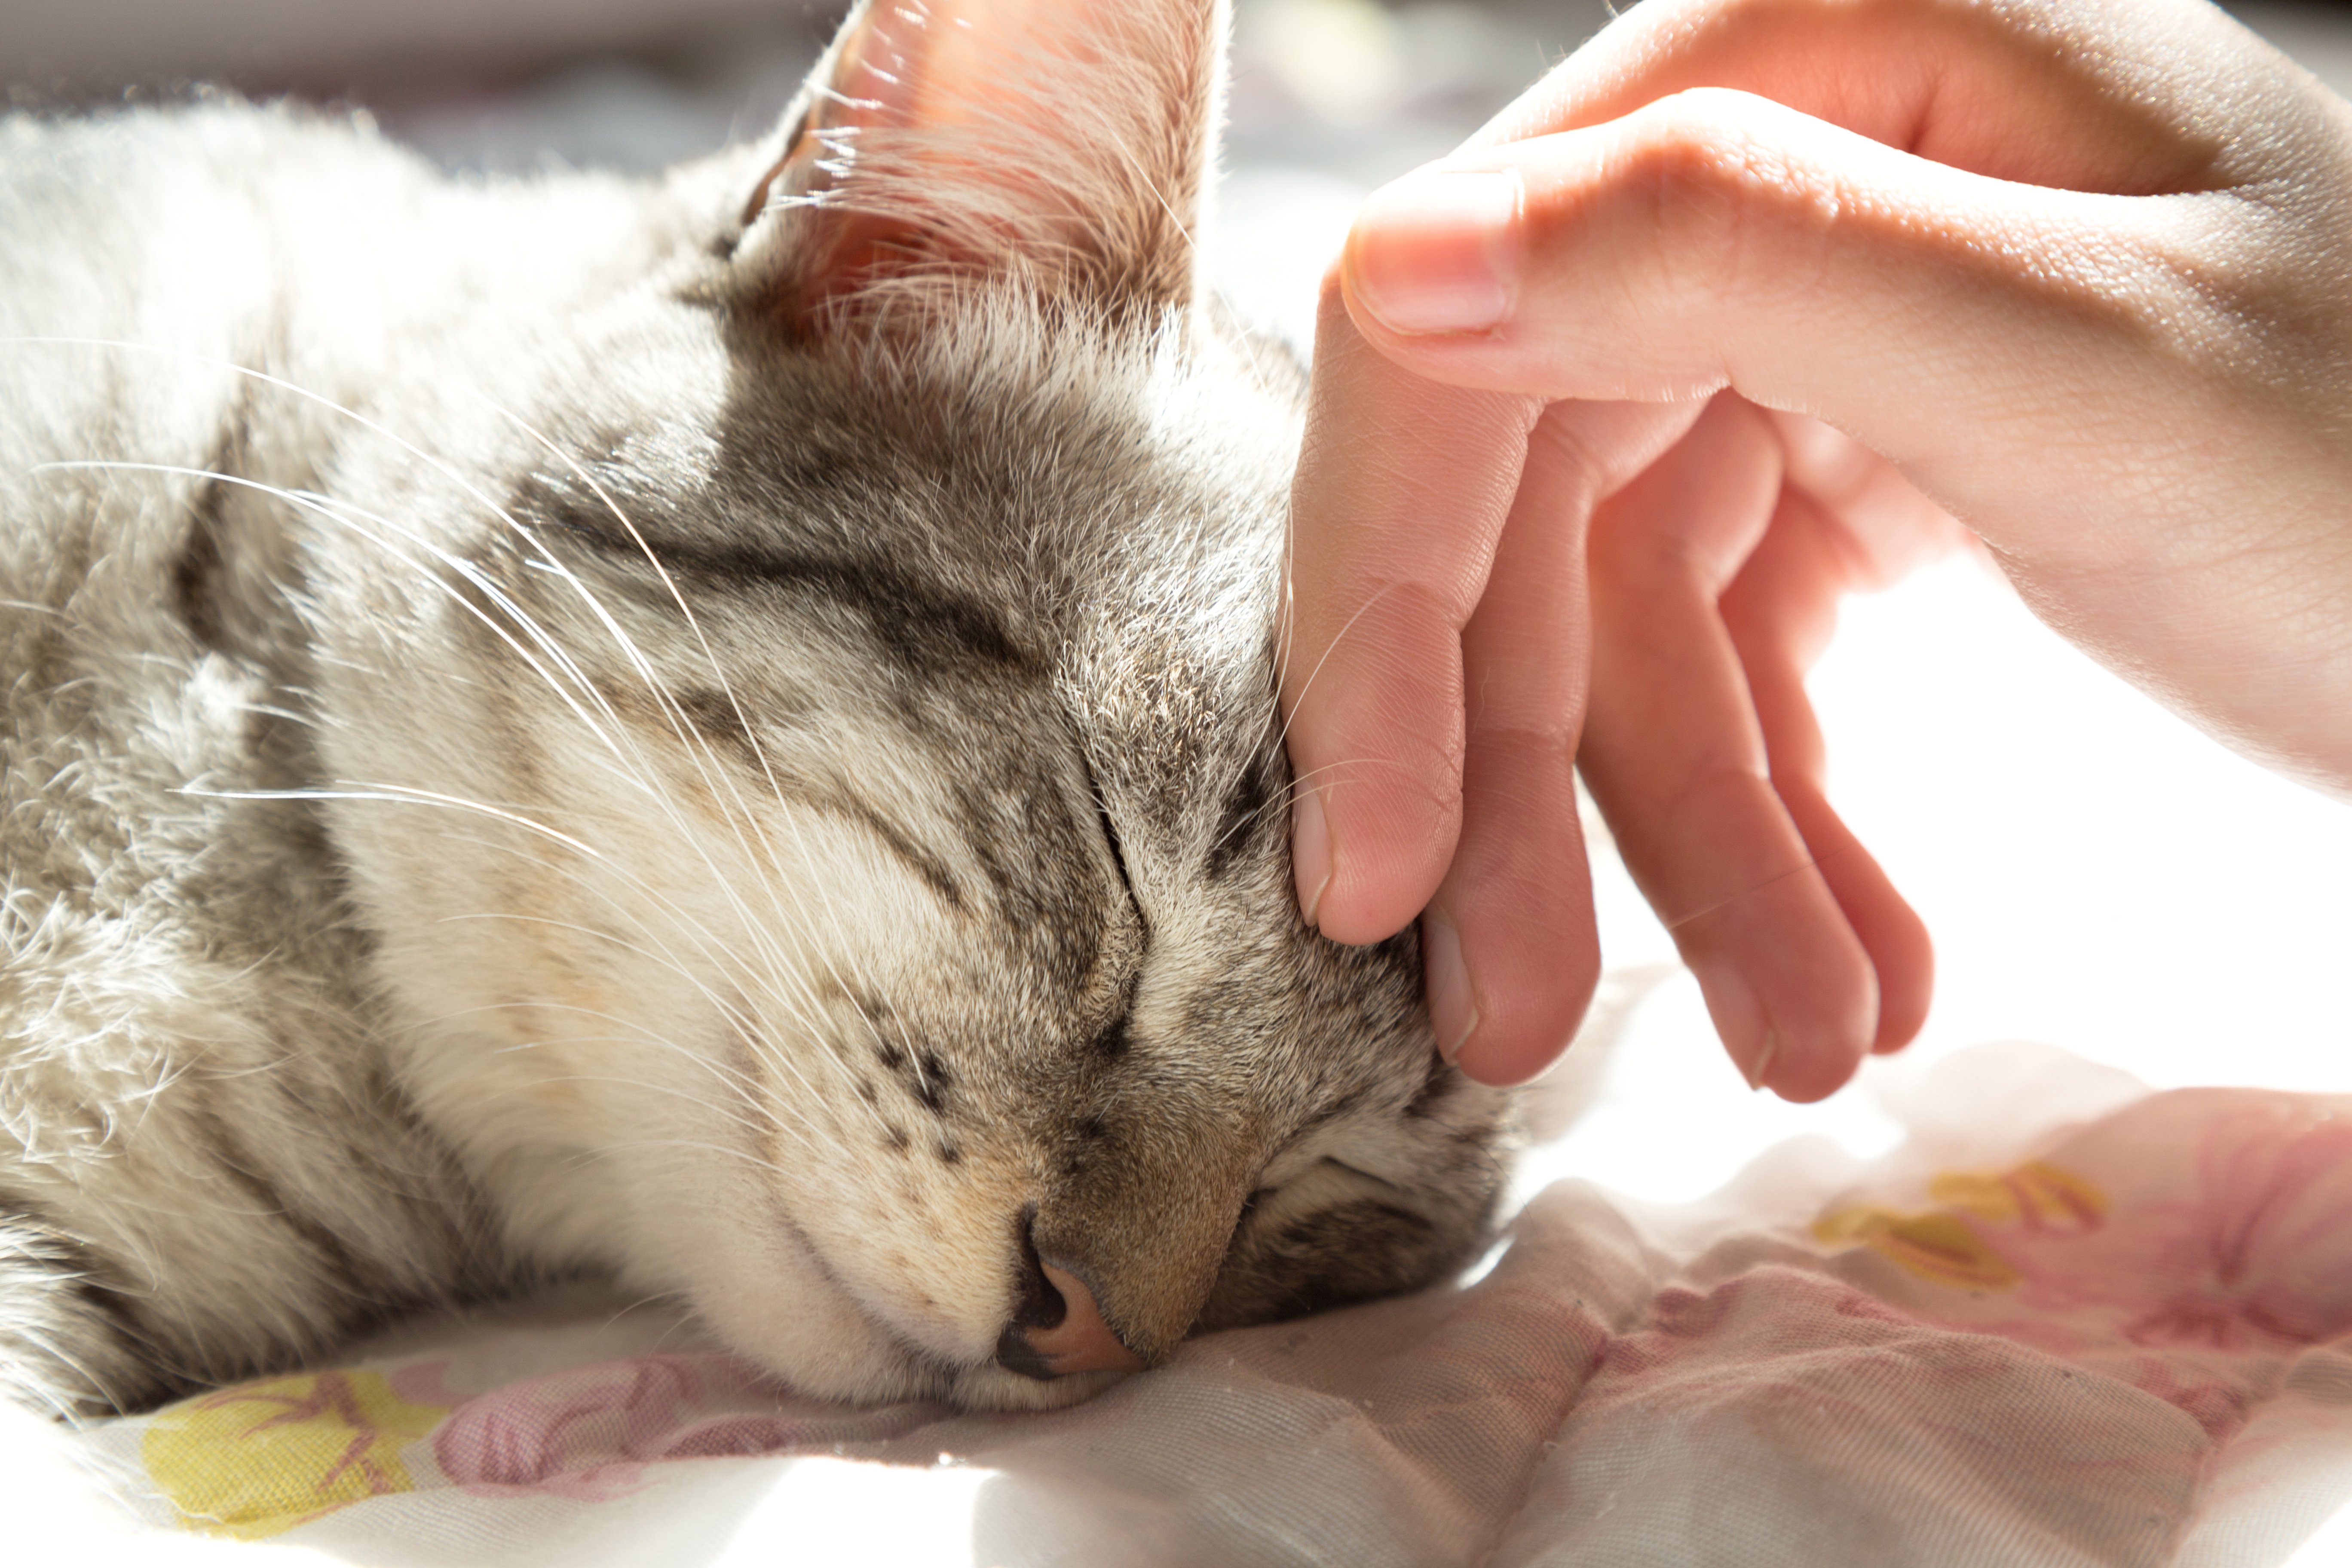 Por ronronean los gatos? | Salud del gato y cuidados | zooplus